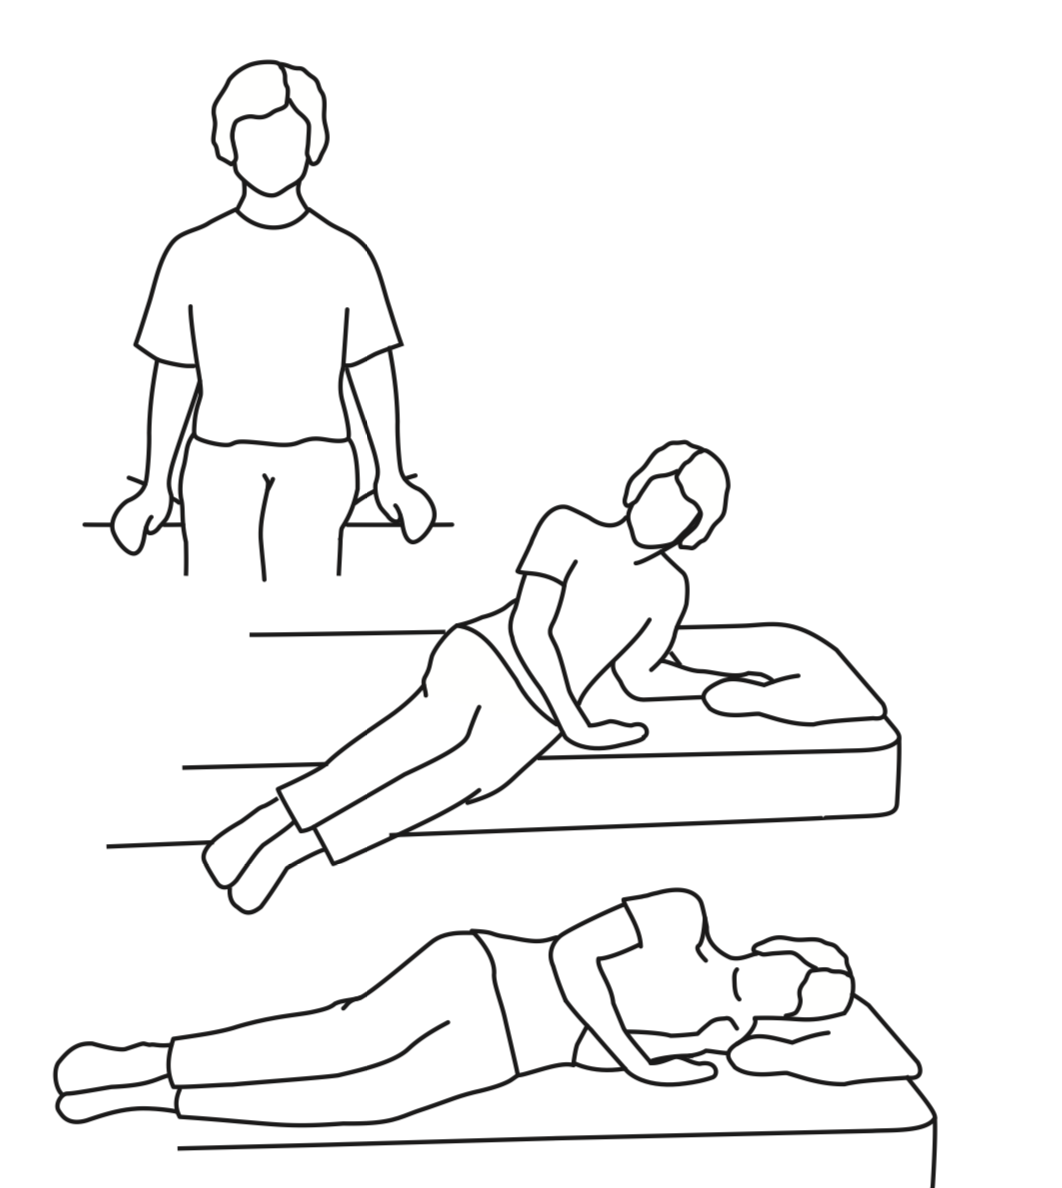 خوابیدن و برخاستن از تختخواب ورزش های بعد از عمل دیسک کمر - 6 - ورزش های بعد از عمل دیسک کمر